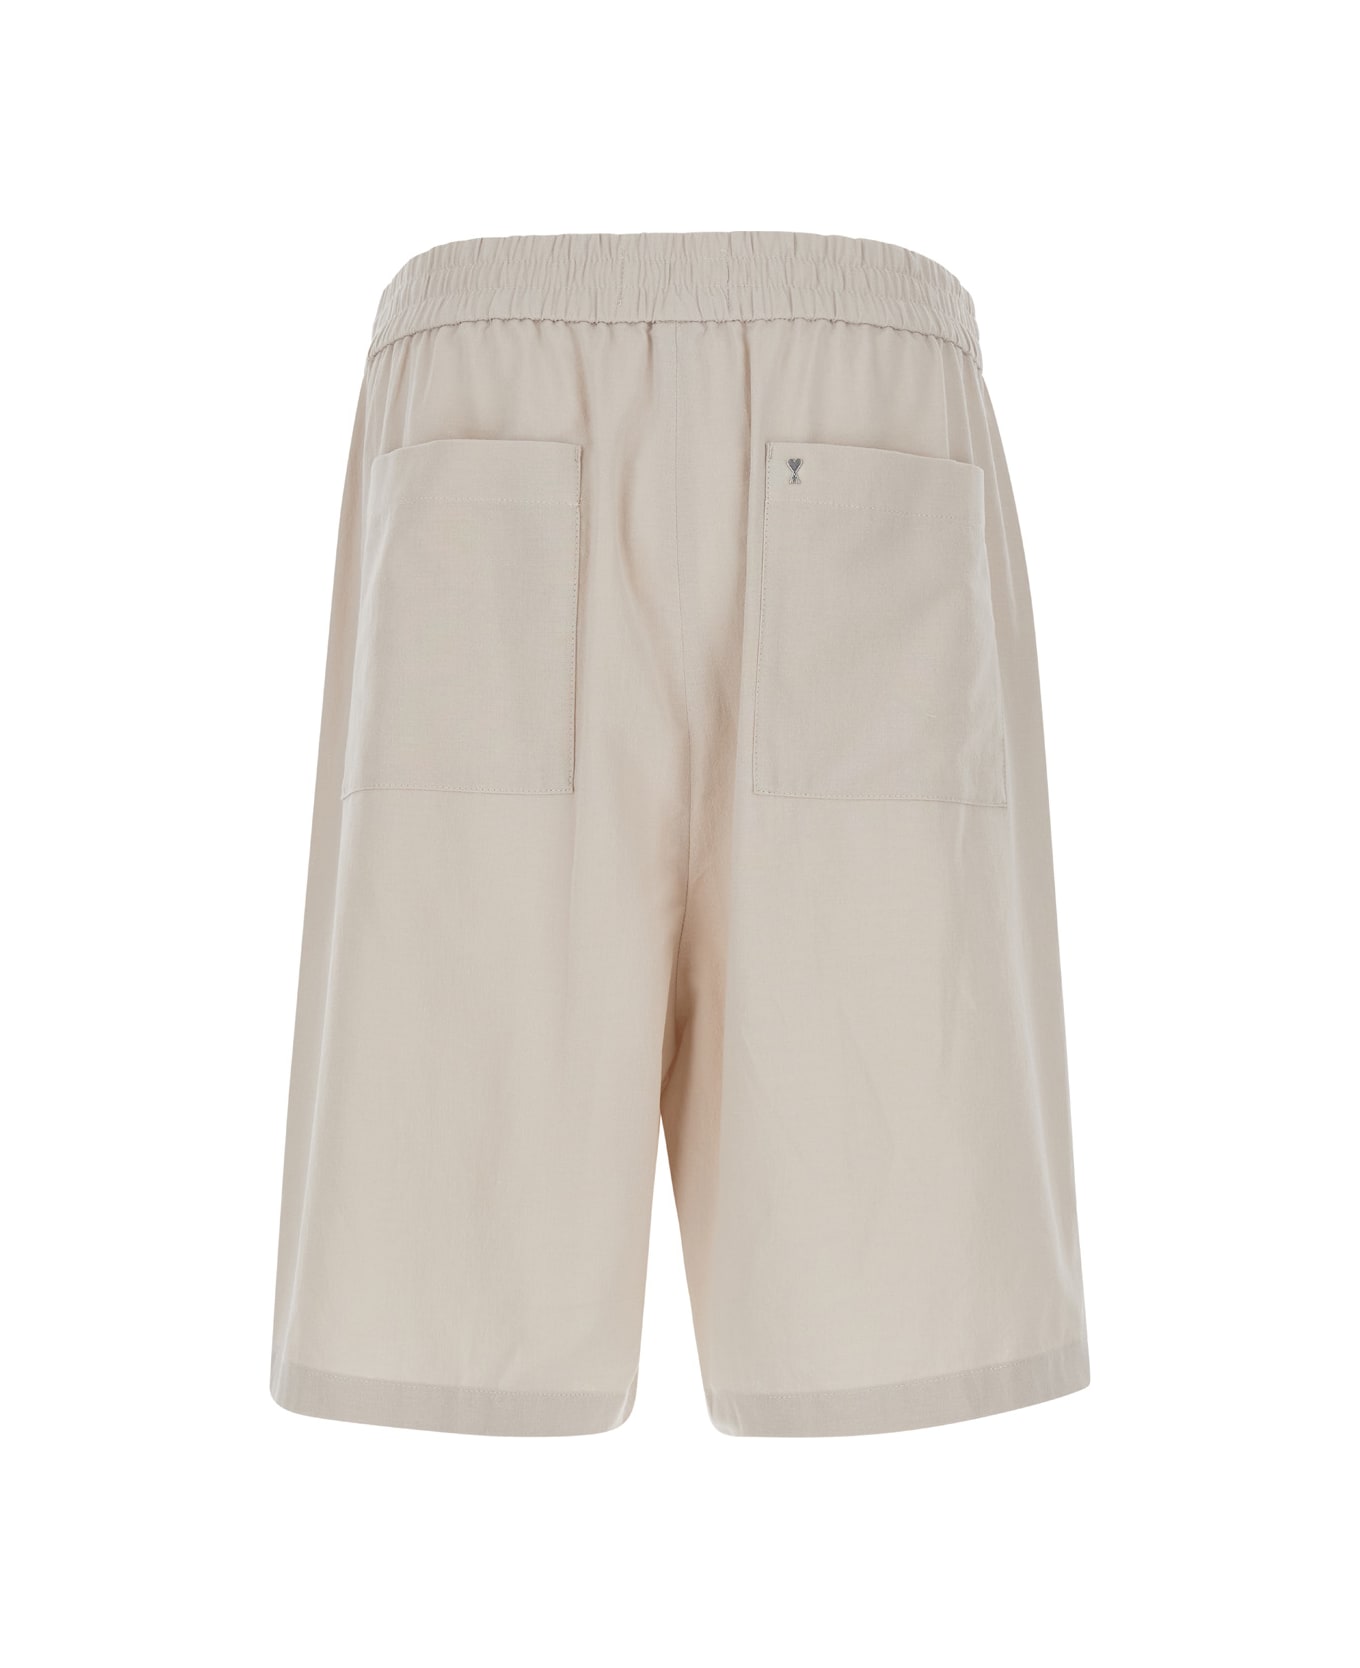 Ami Alexandre Mattiussi Beige Elastic Bermuda Shorts In Cotton Man - Beige